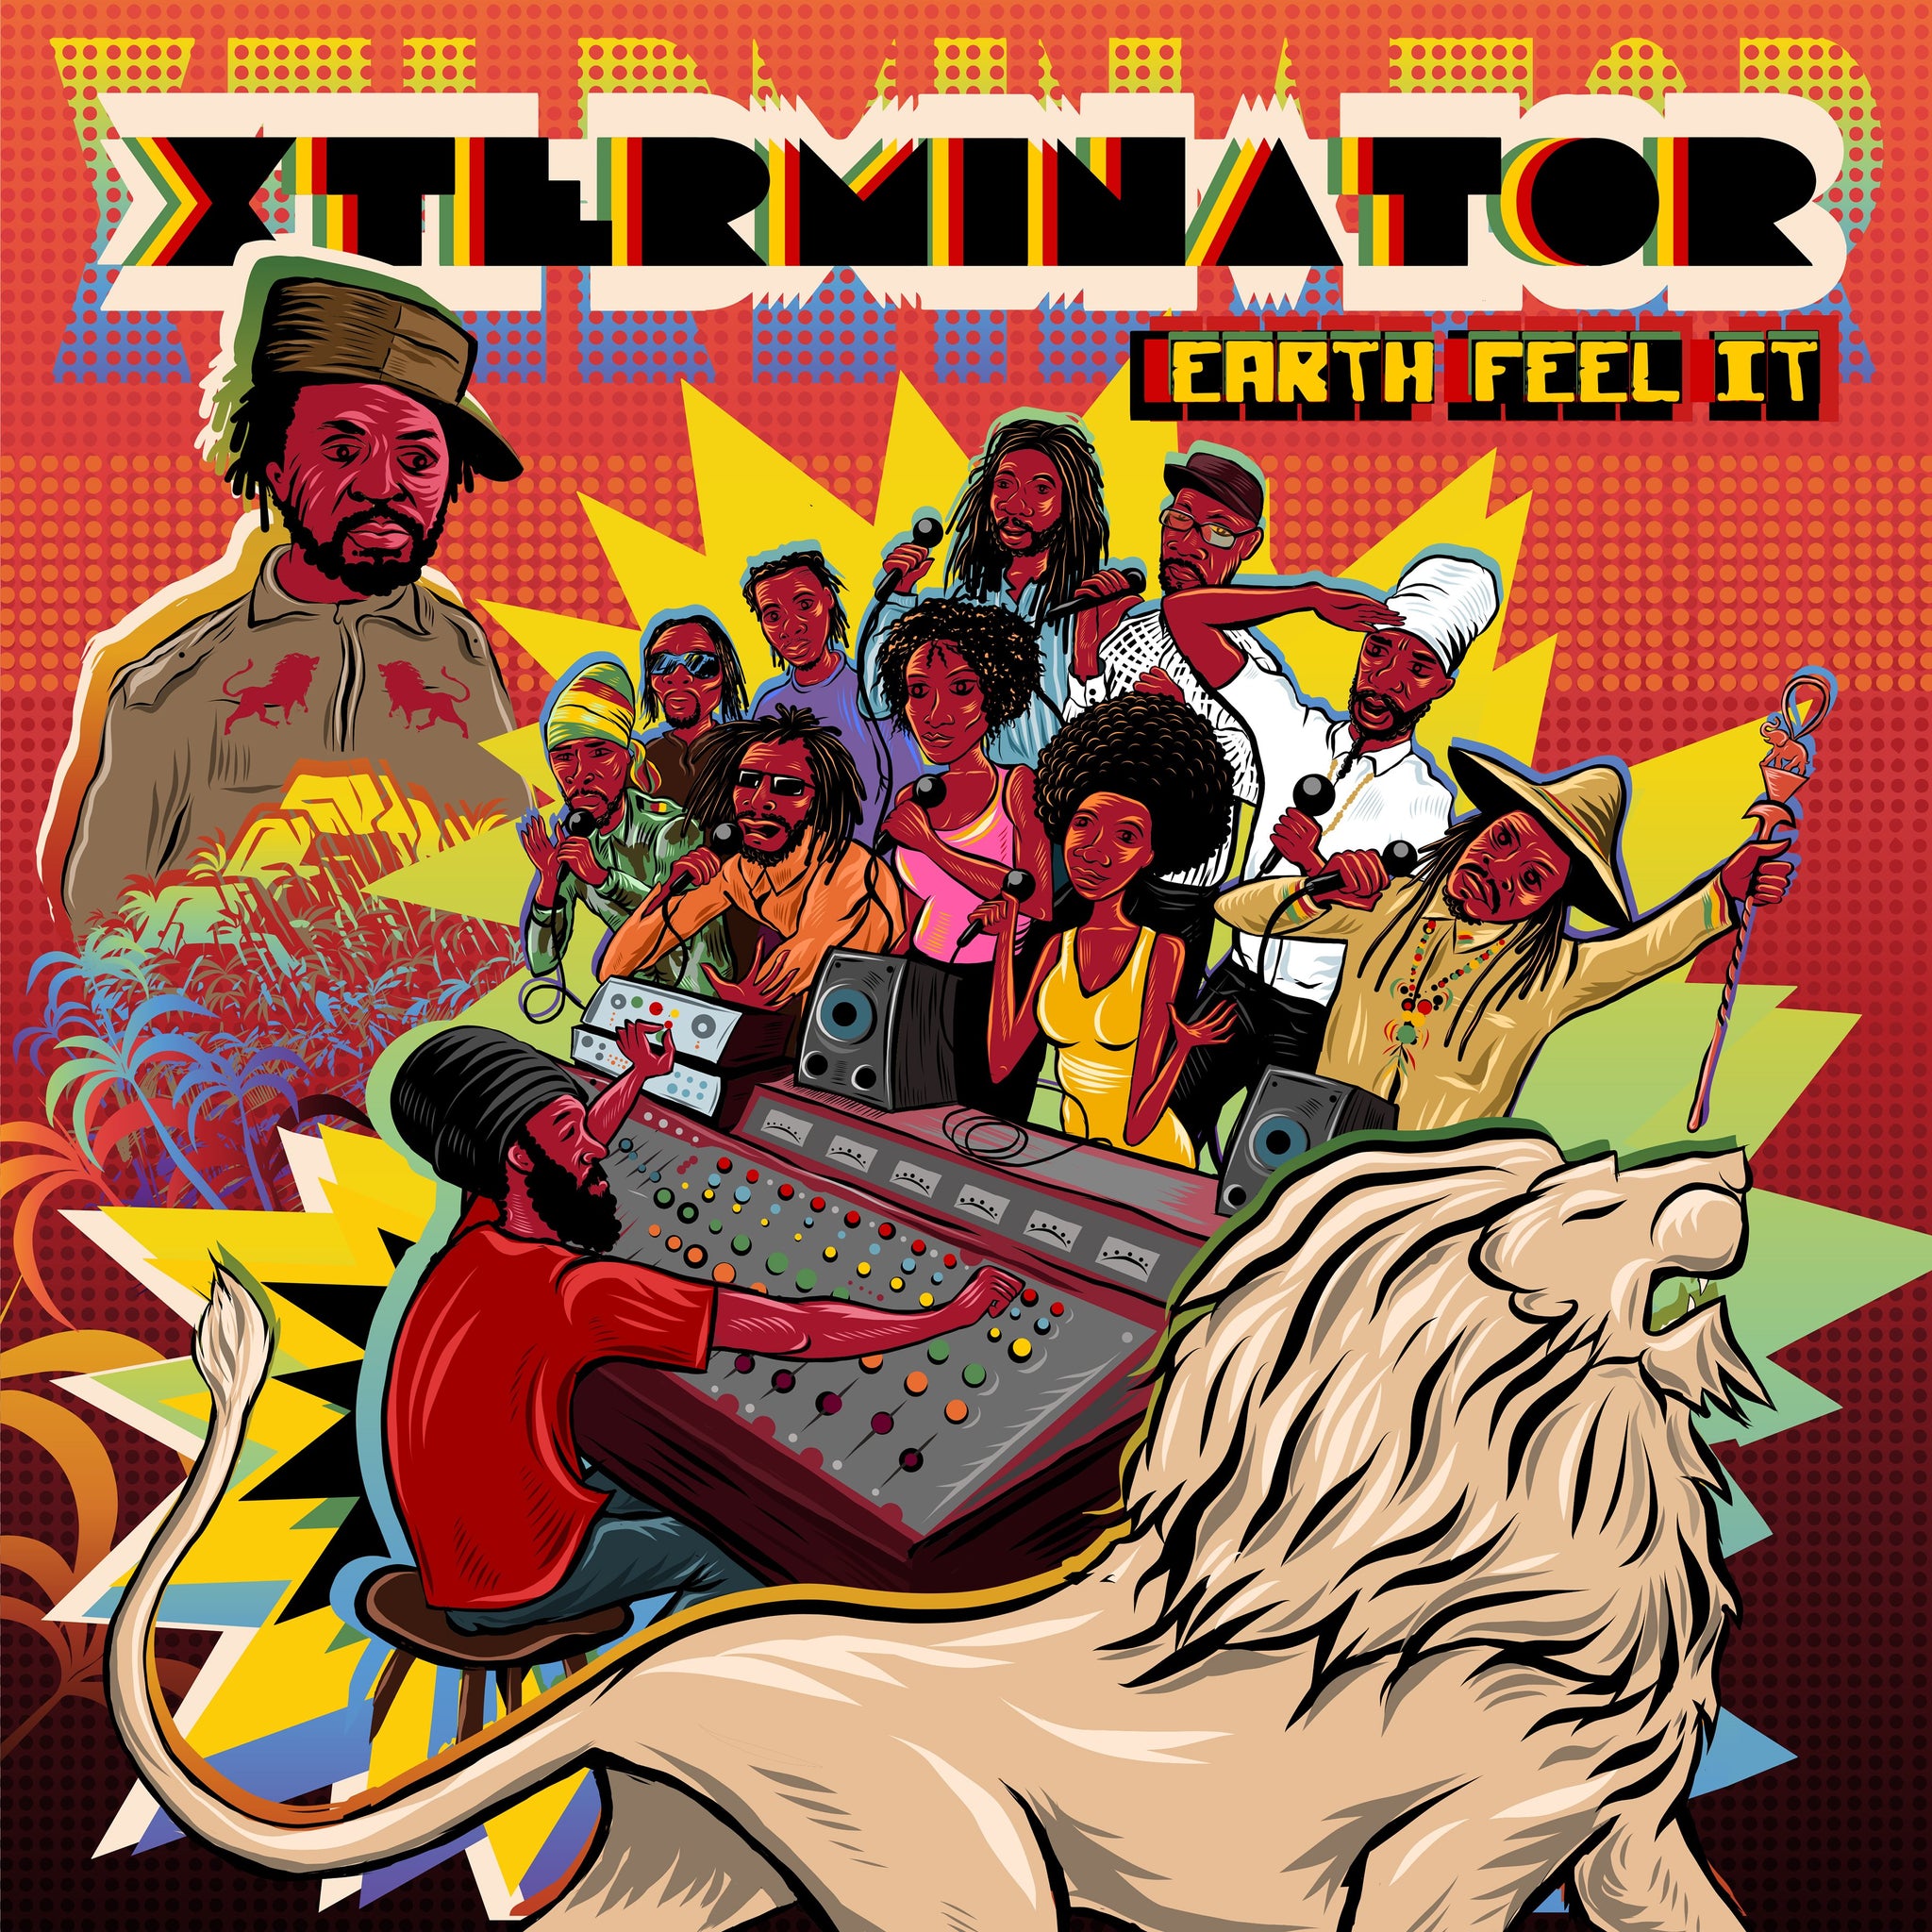 Xterminator - Earth Feel It